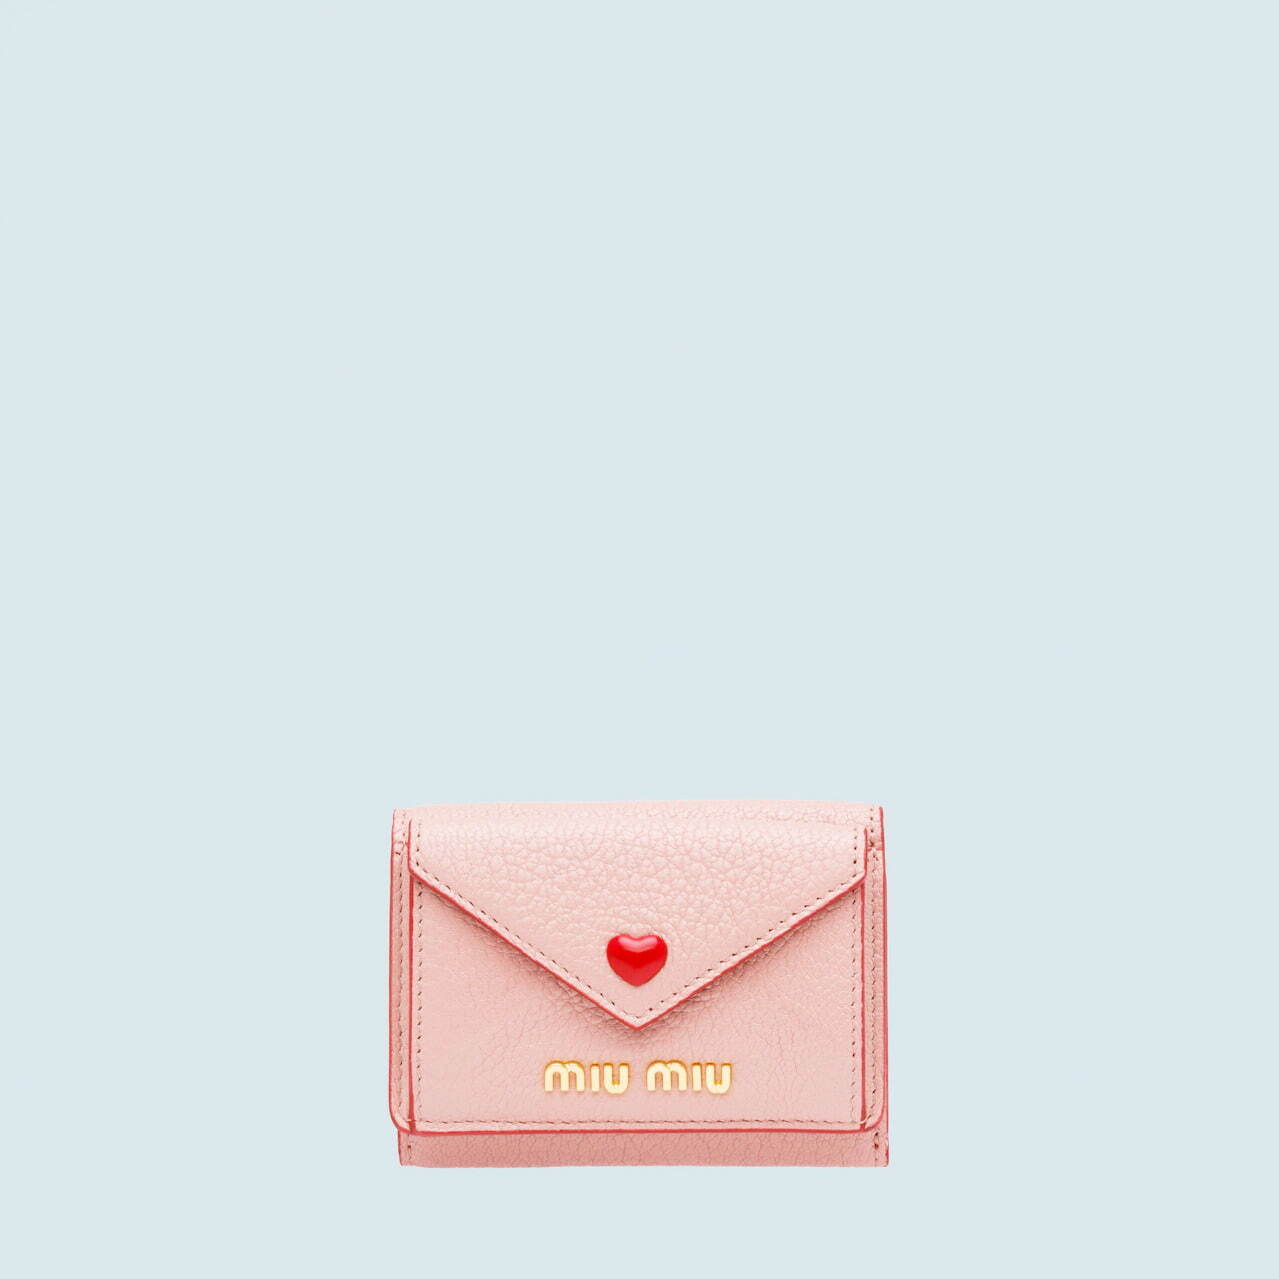 人気ブランド ピンクレザーグッズ特集 おしゃれ かわいい 財布 バッグなど プレゼントにもおすすめ ファッションプレス